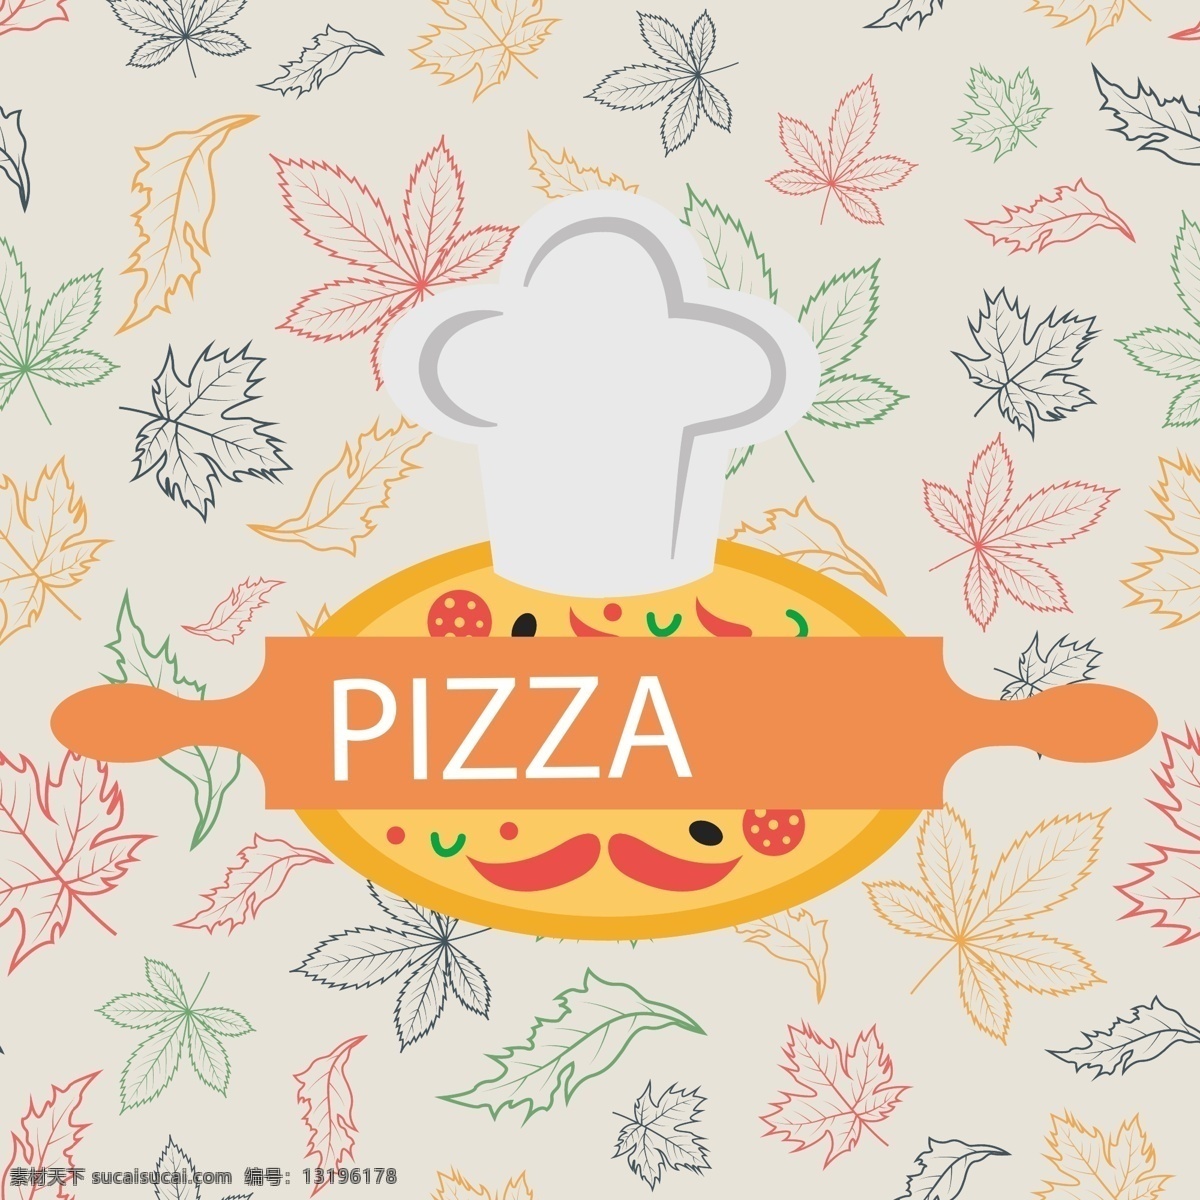 水果披萨菜单 菜单 披萨 海鲜披萨 水果披萨 夏威夷披萨 榴莲披萨 牛肉披萨 欧洲披萨 意大利披萨 pizza 美味 美食 中国披萨 美味披萨 小吃 番茄披萨 火腿披萨 西班牙披萨 西红柿披萨 矢量 生活百科 餐饮美食